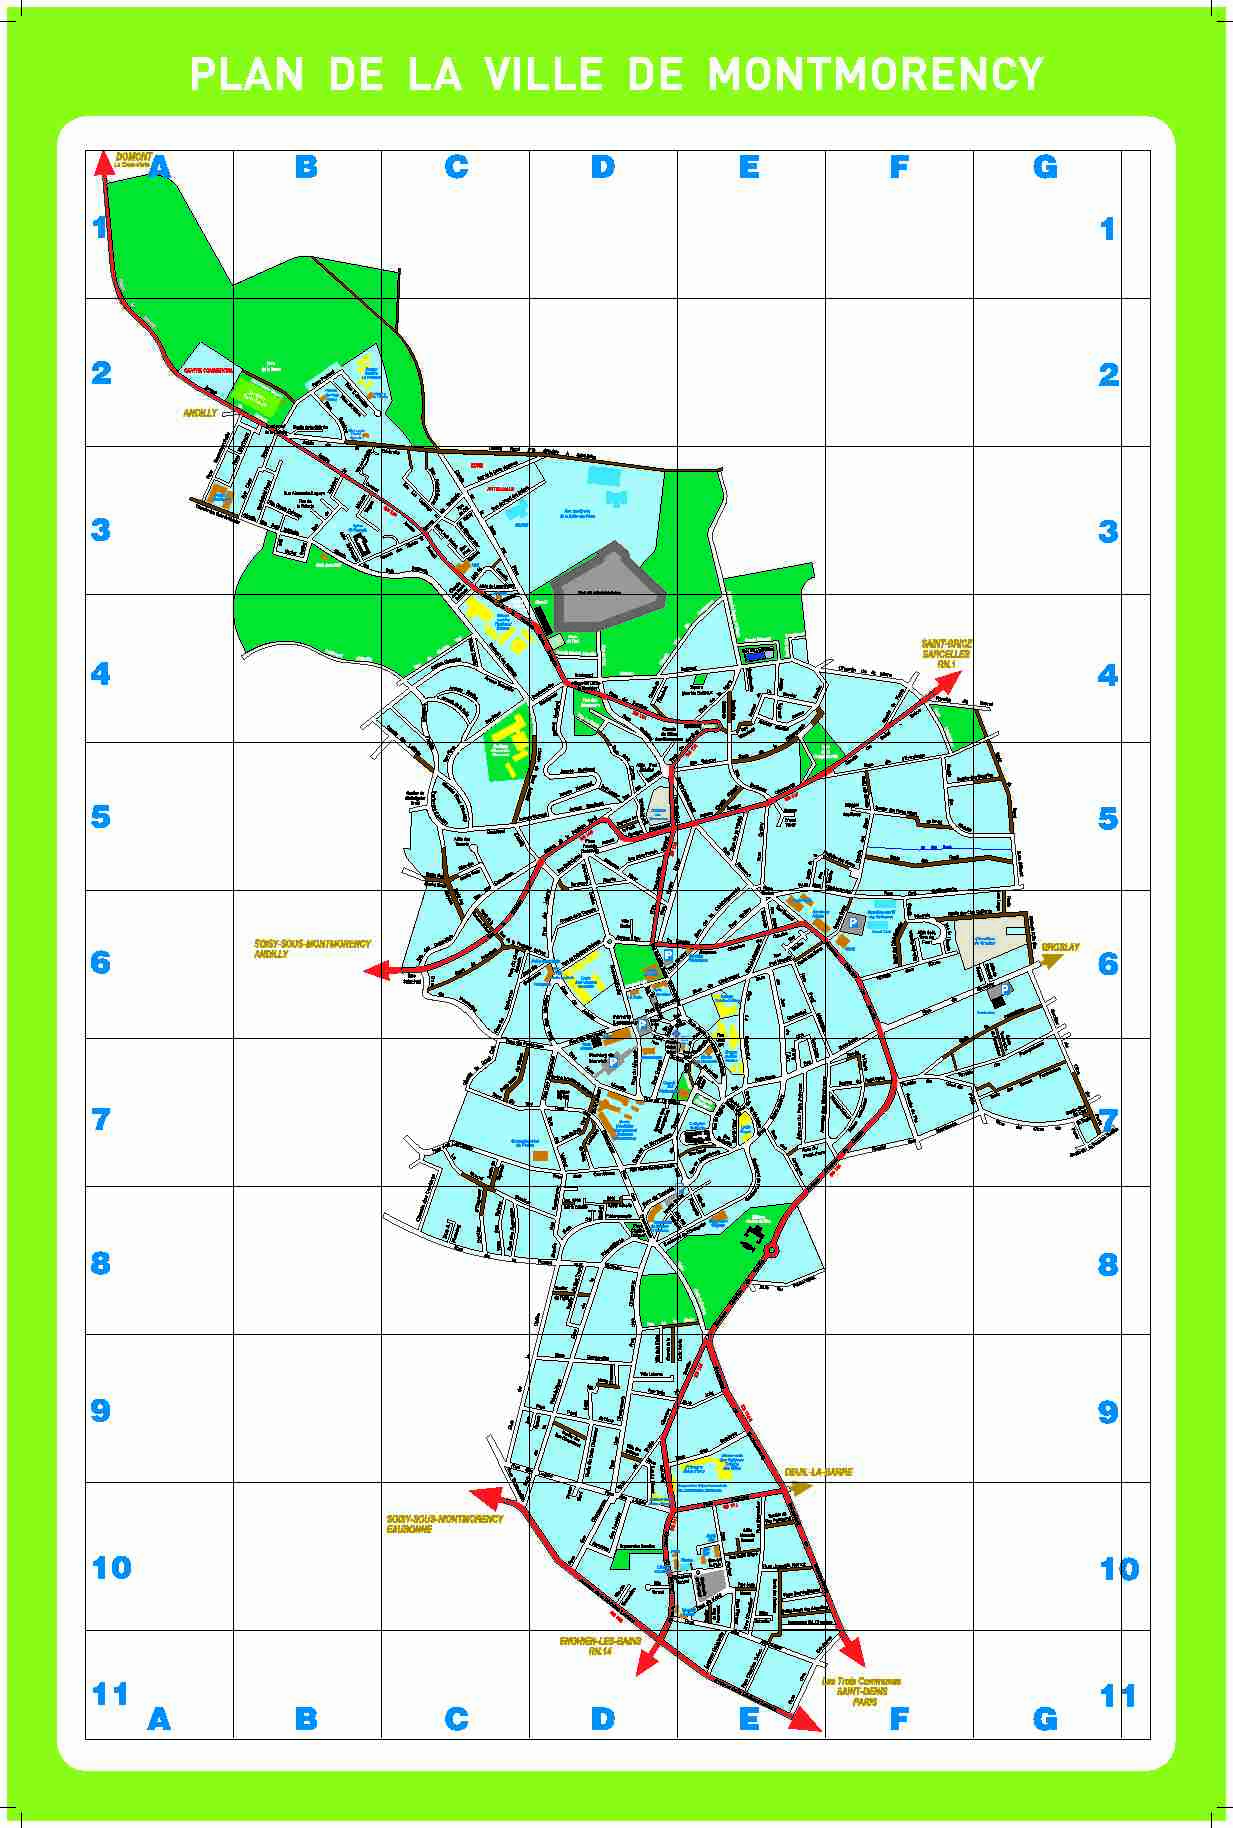 Plan de la ville de montmorency - Accessiblenet